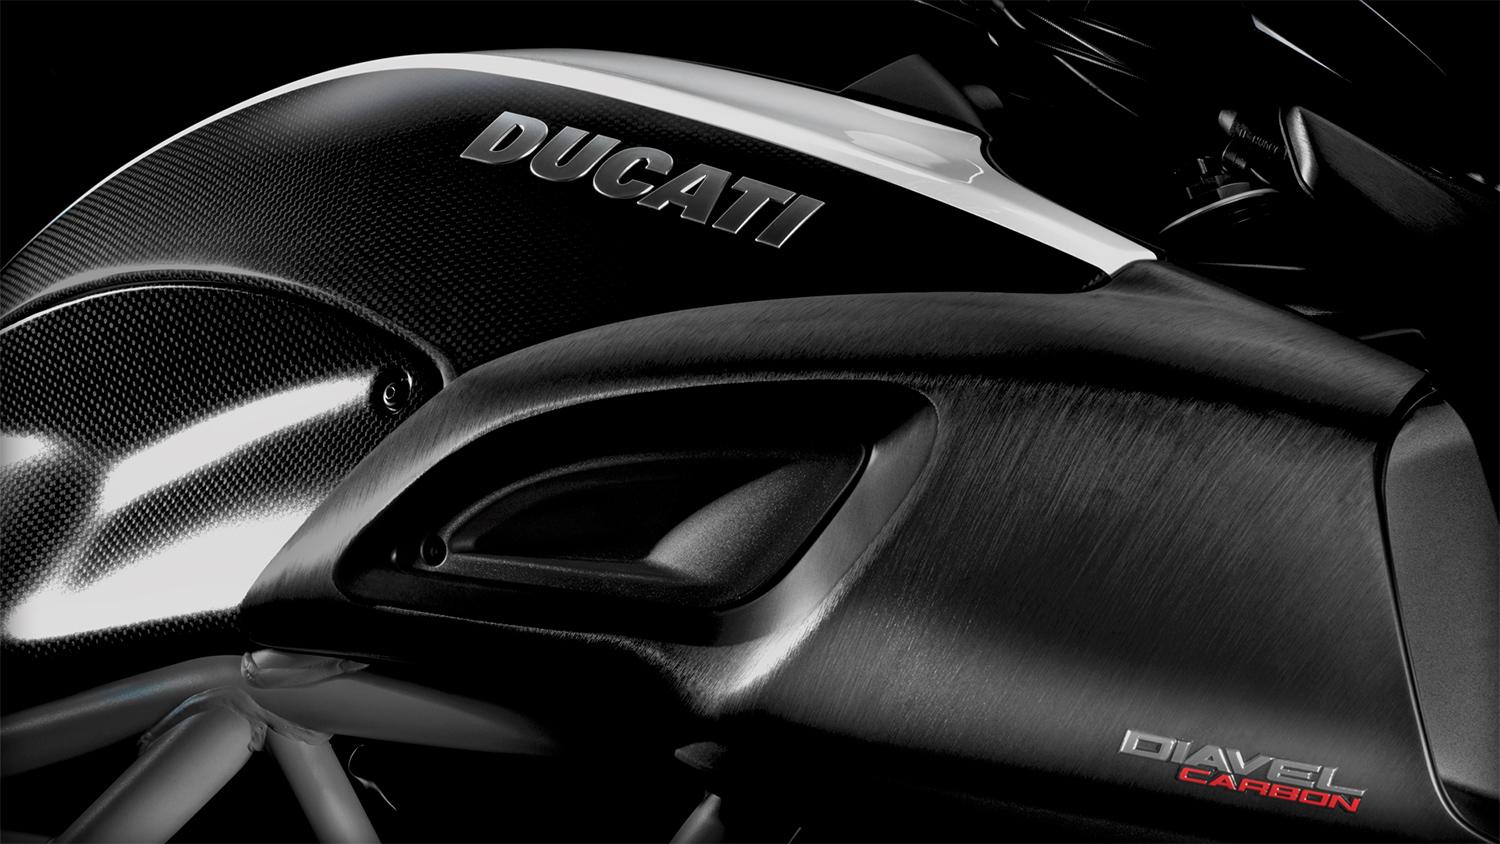 Ducati-Diavel-Carbon-detail-macro